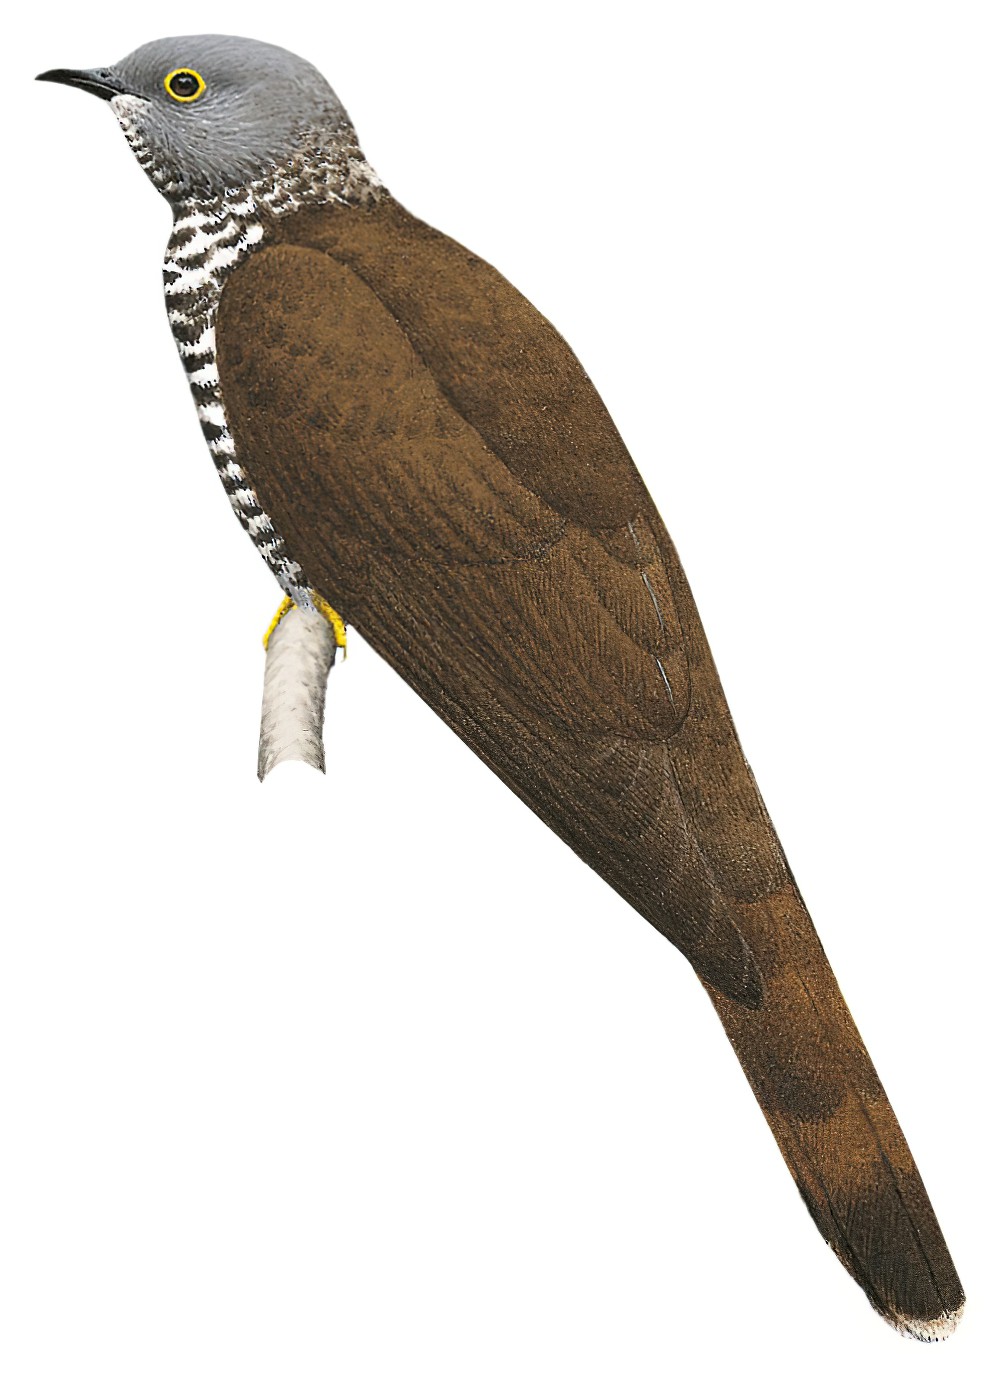 Sulawesi Cuckoo / Cuculus crassirostris